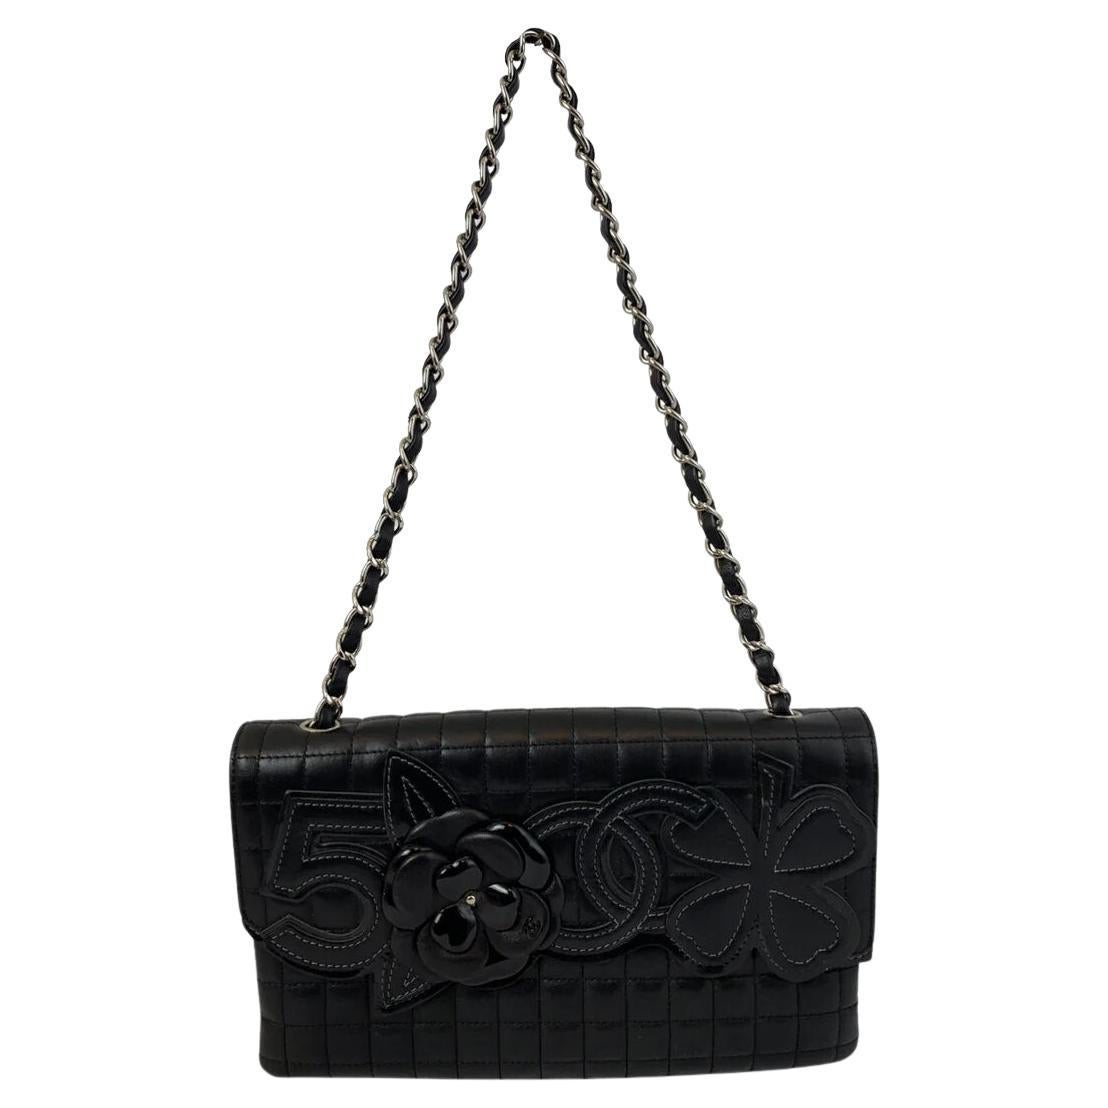 Chanel Camellia Handbag - 86 For Sale on 1stDibs